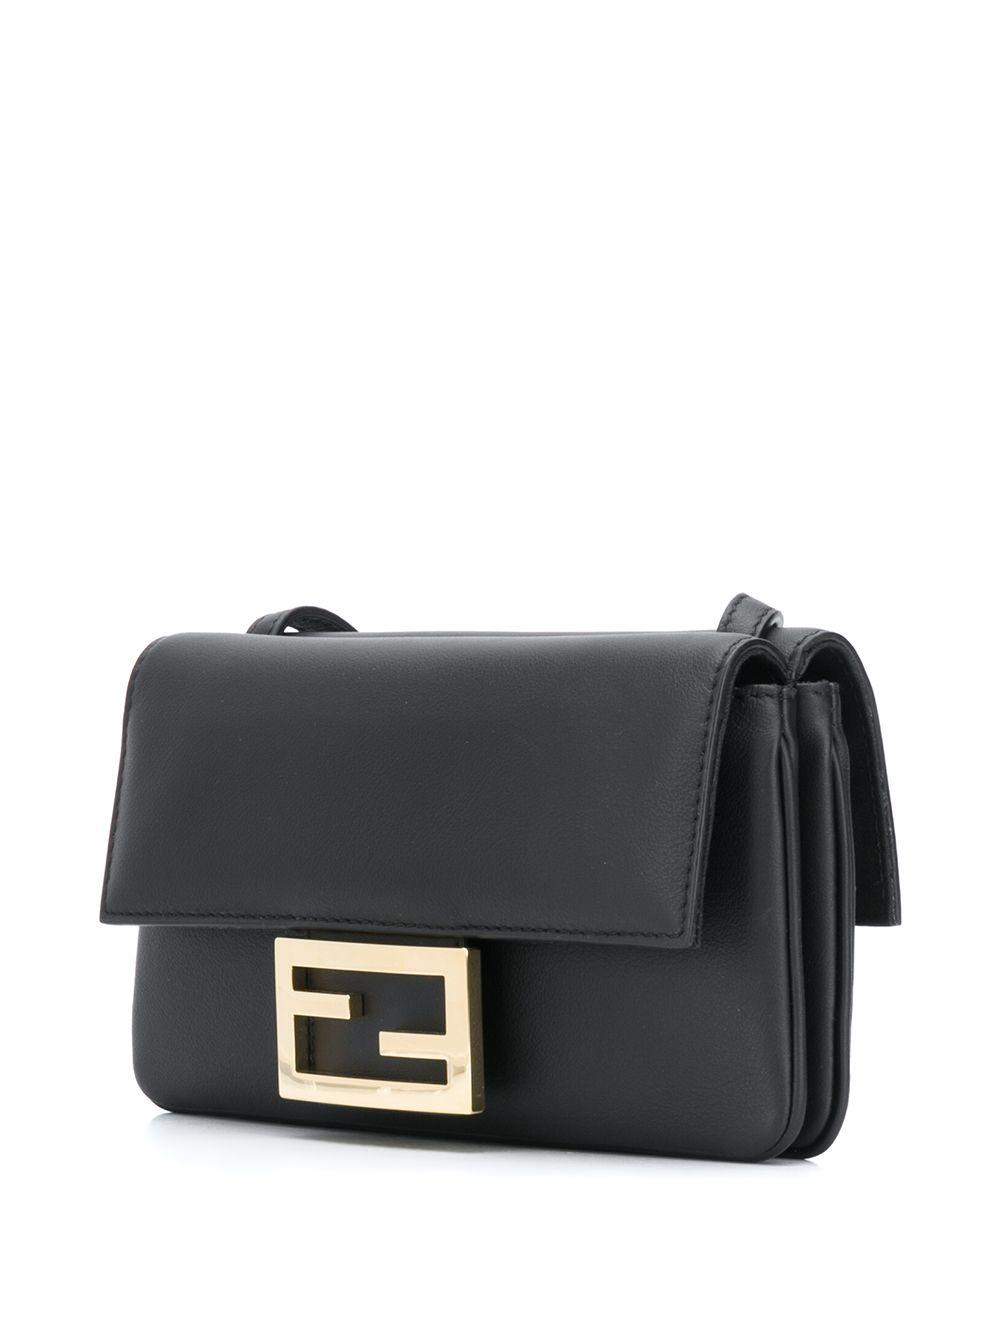 Fendi Duo Baguette Leather Shoulder Bag in Black - Lyst